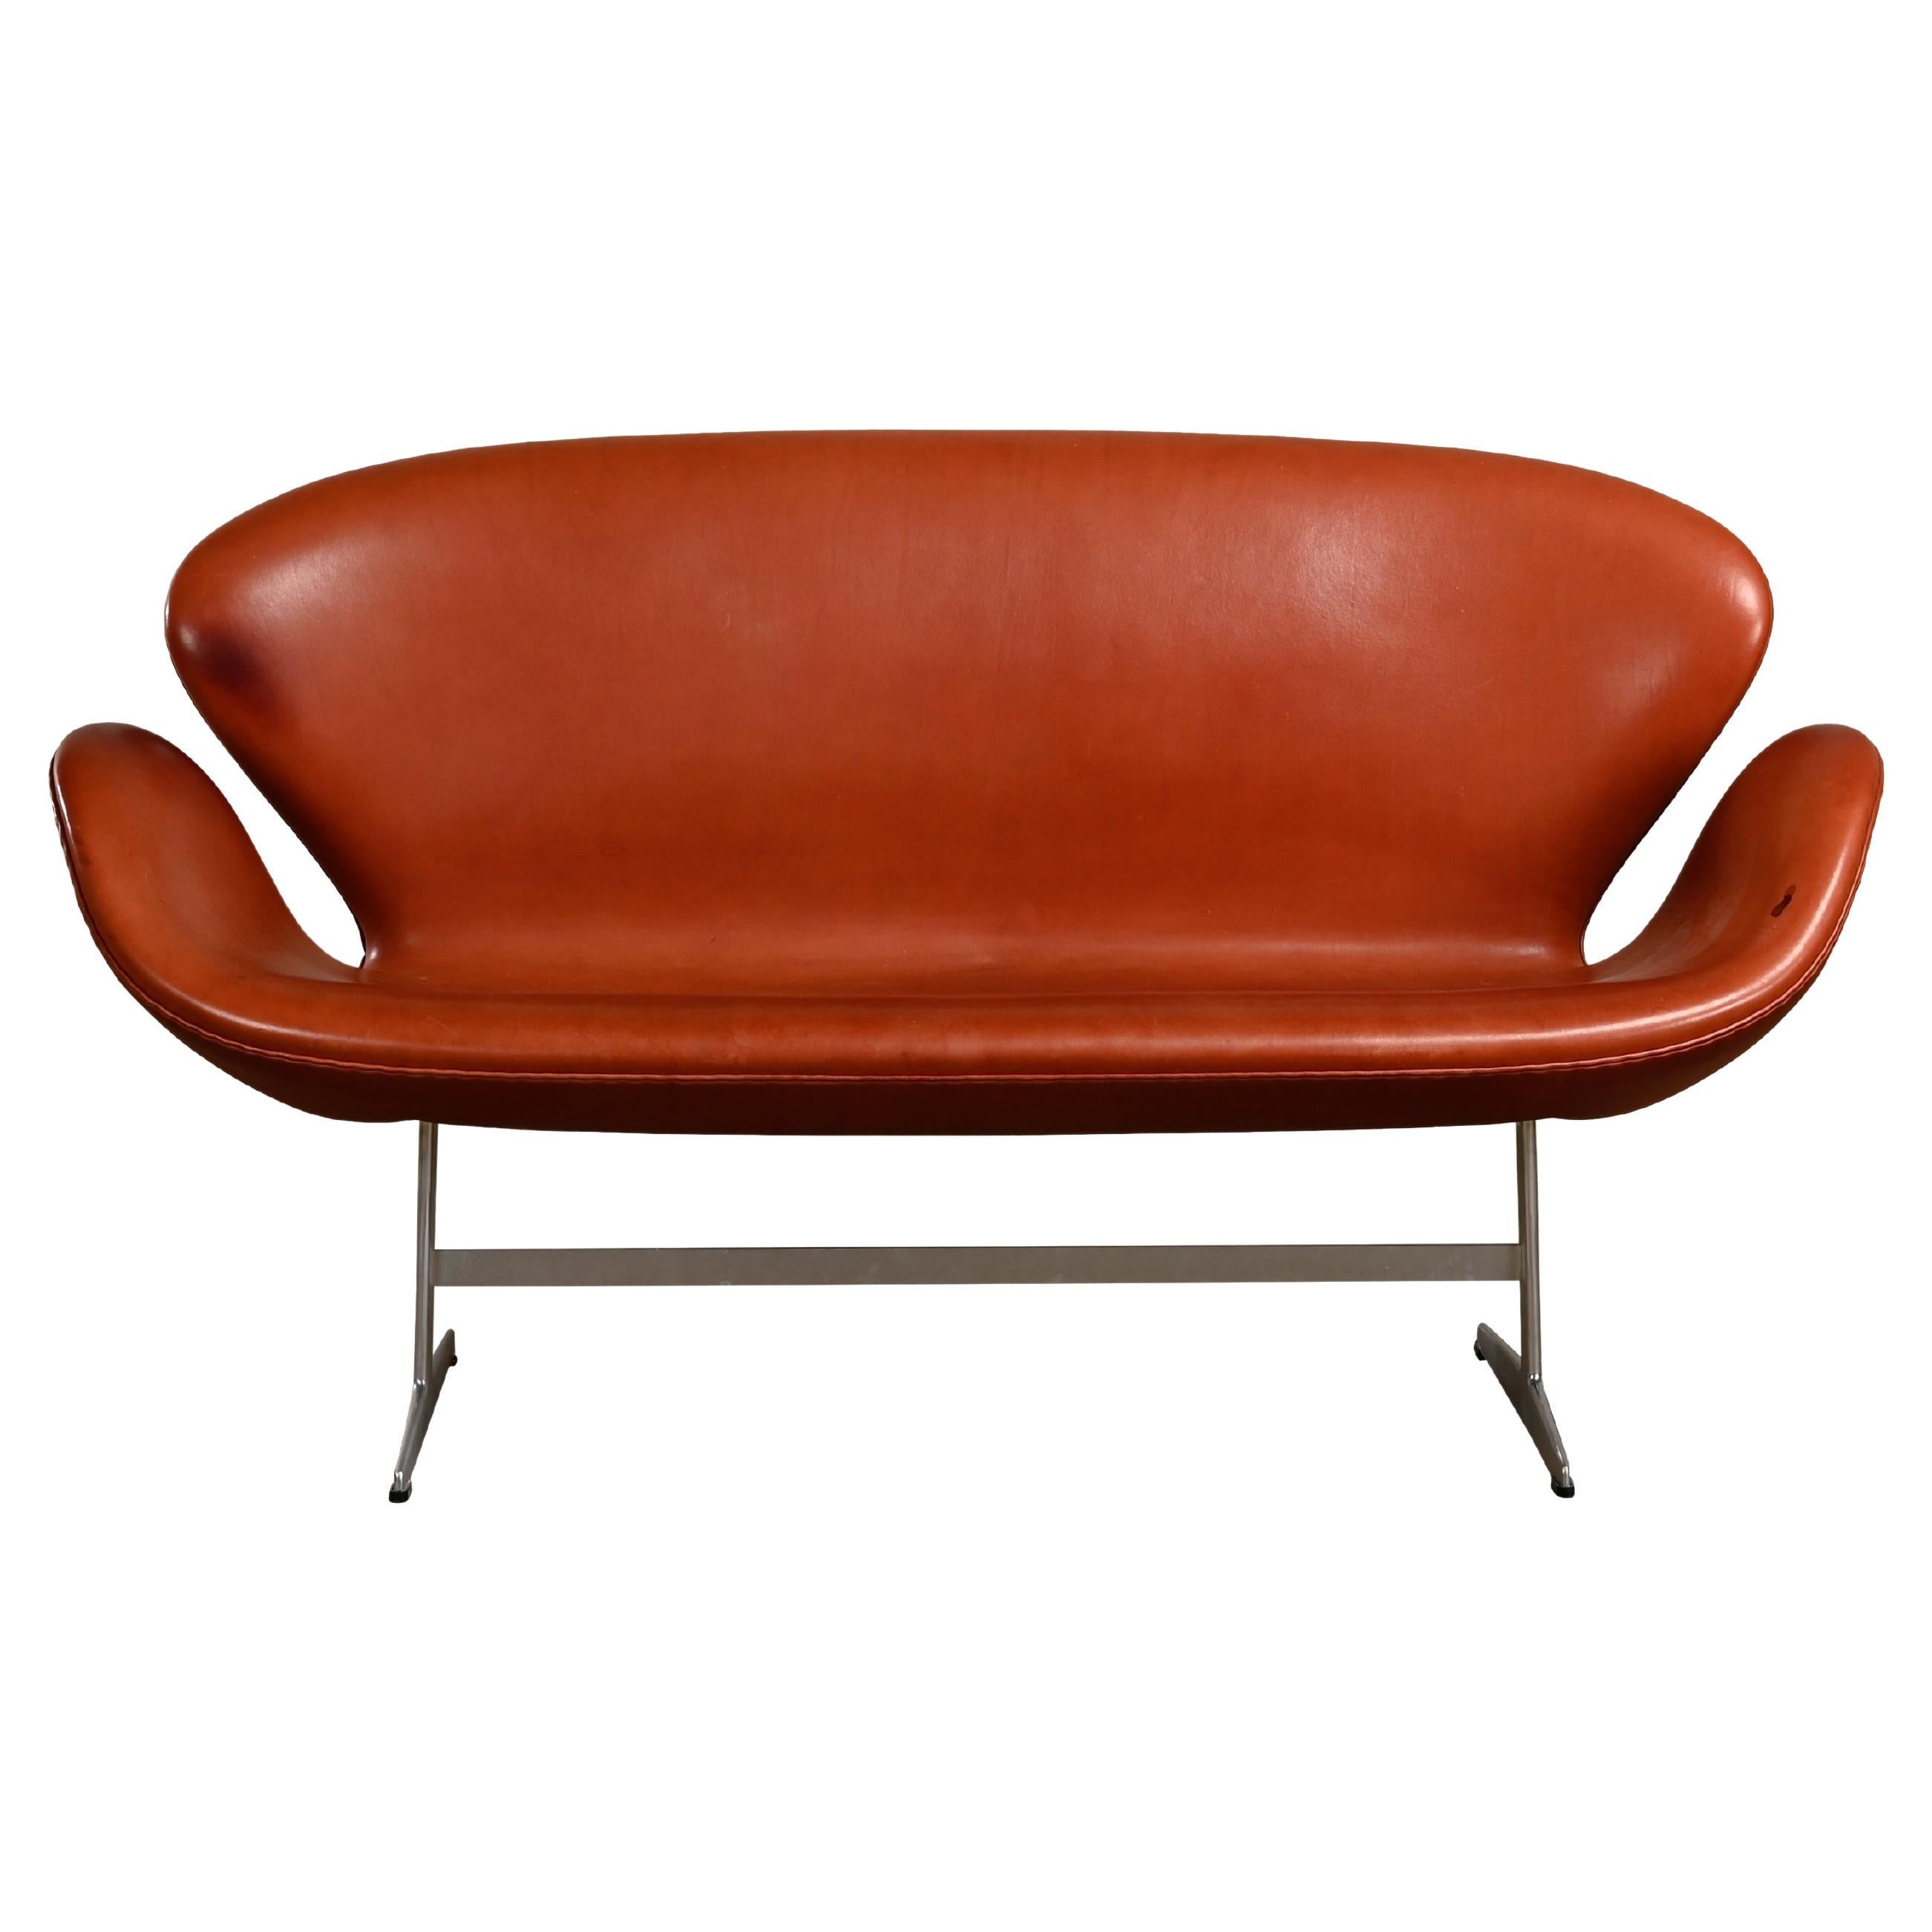 Arne Jacobsen Swan Sofa in Grace Walnut Leather for Fritz Hansen, Denmark 1958